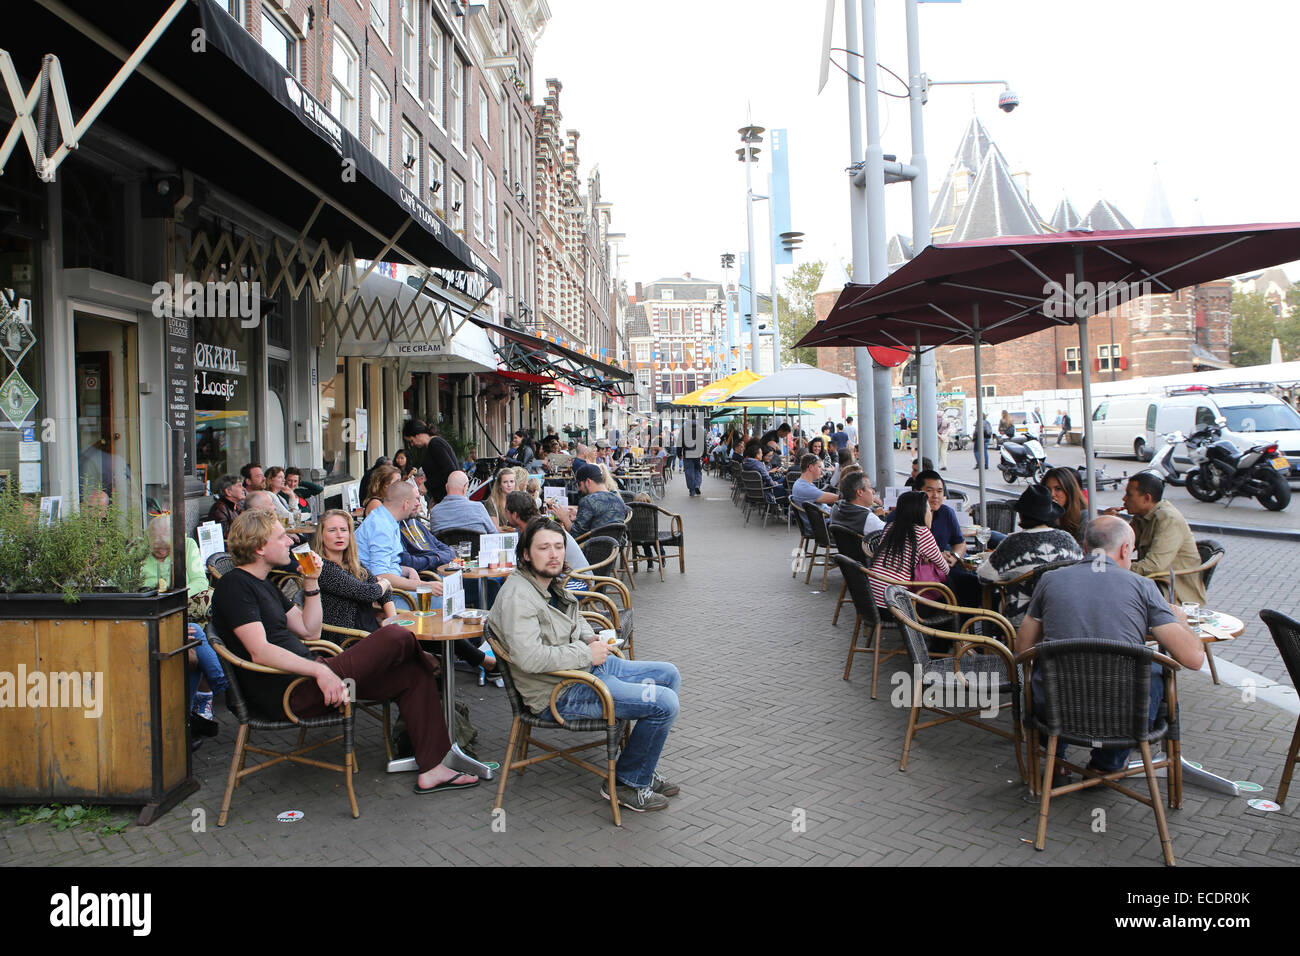 Amsterdam cafe  restaurante patio exterior gente ocupada 